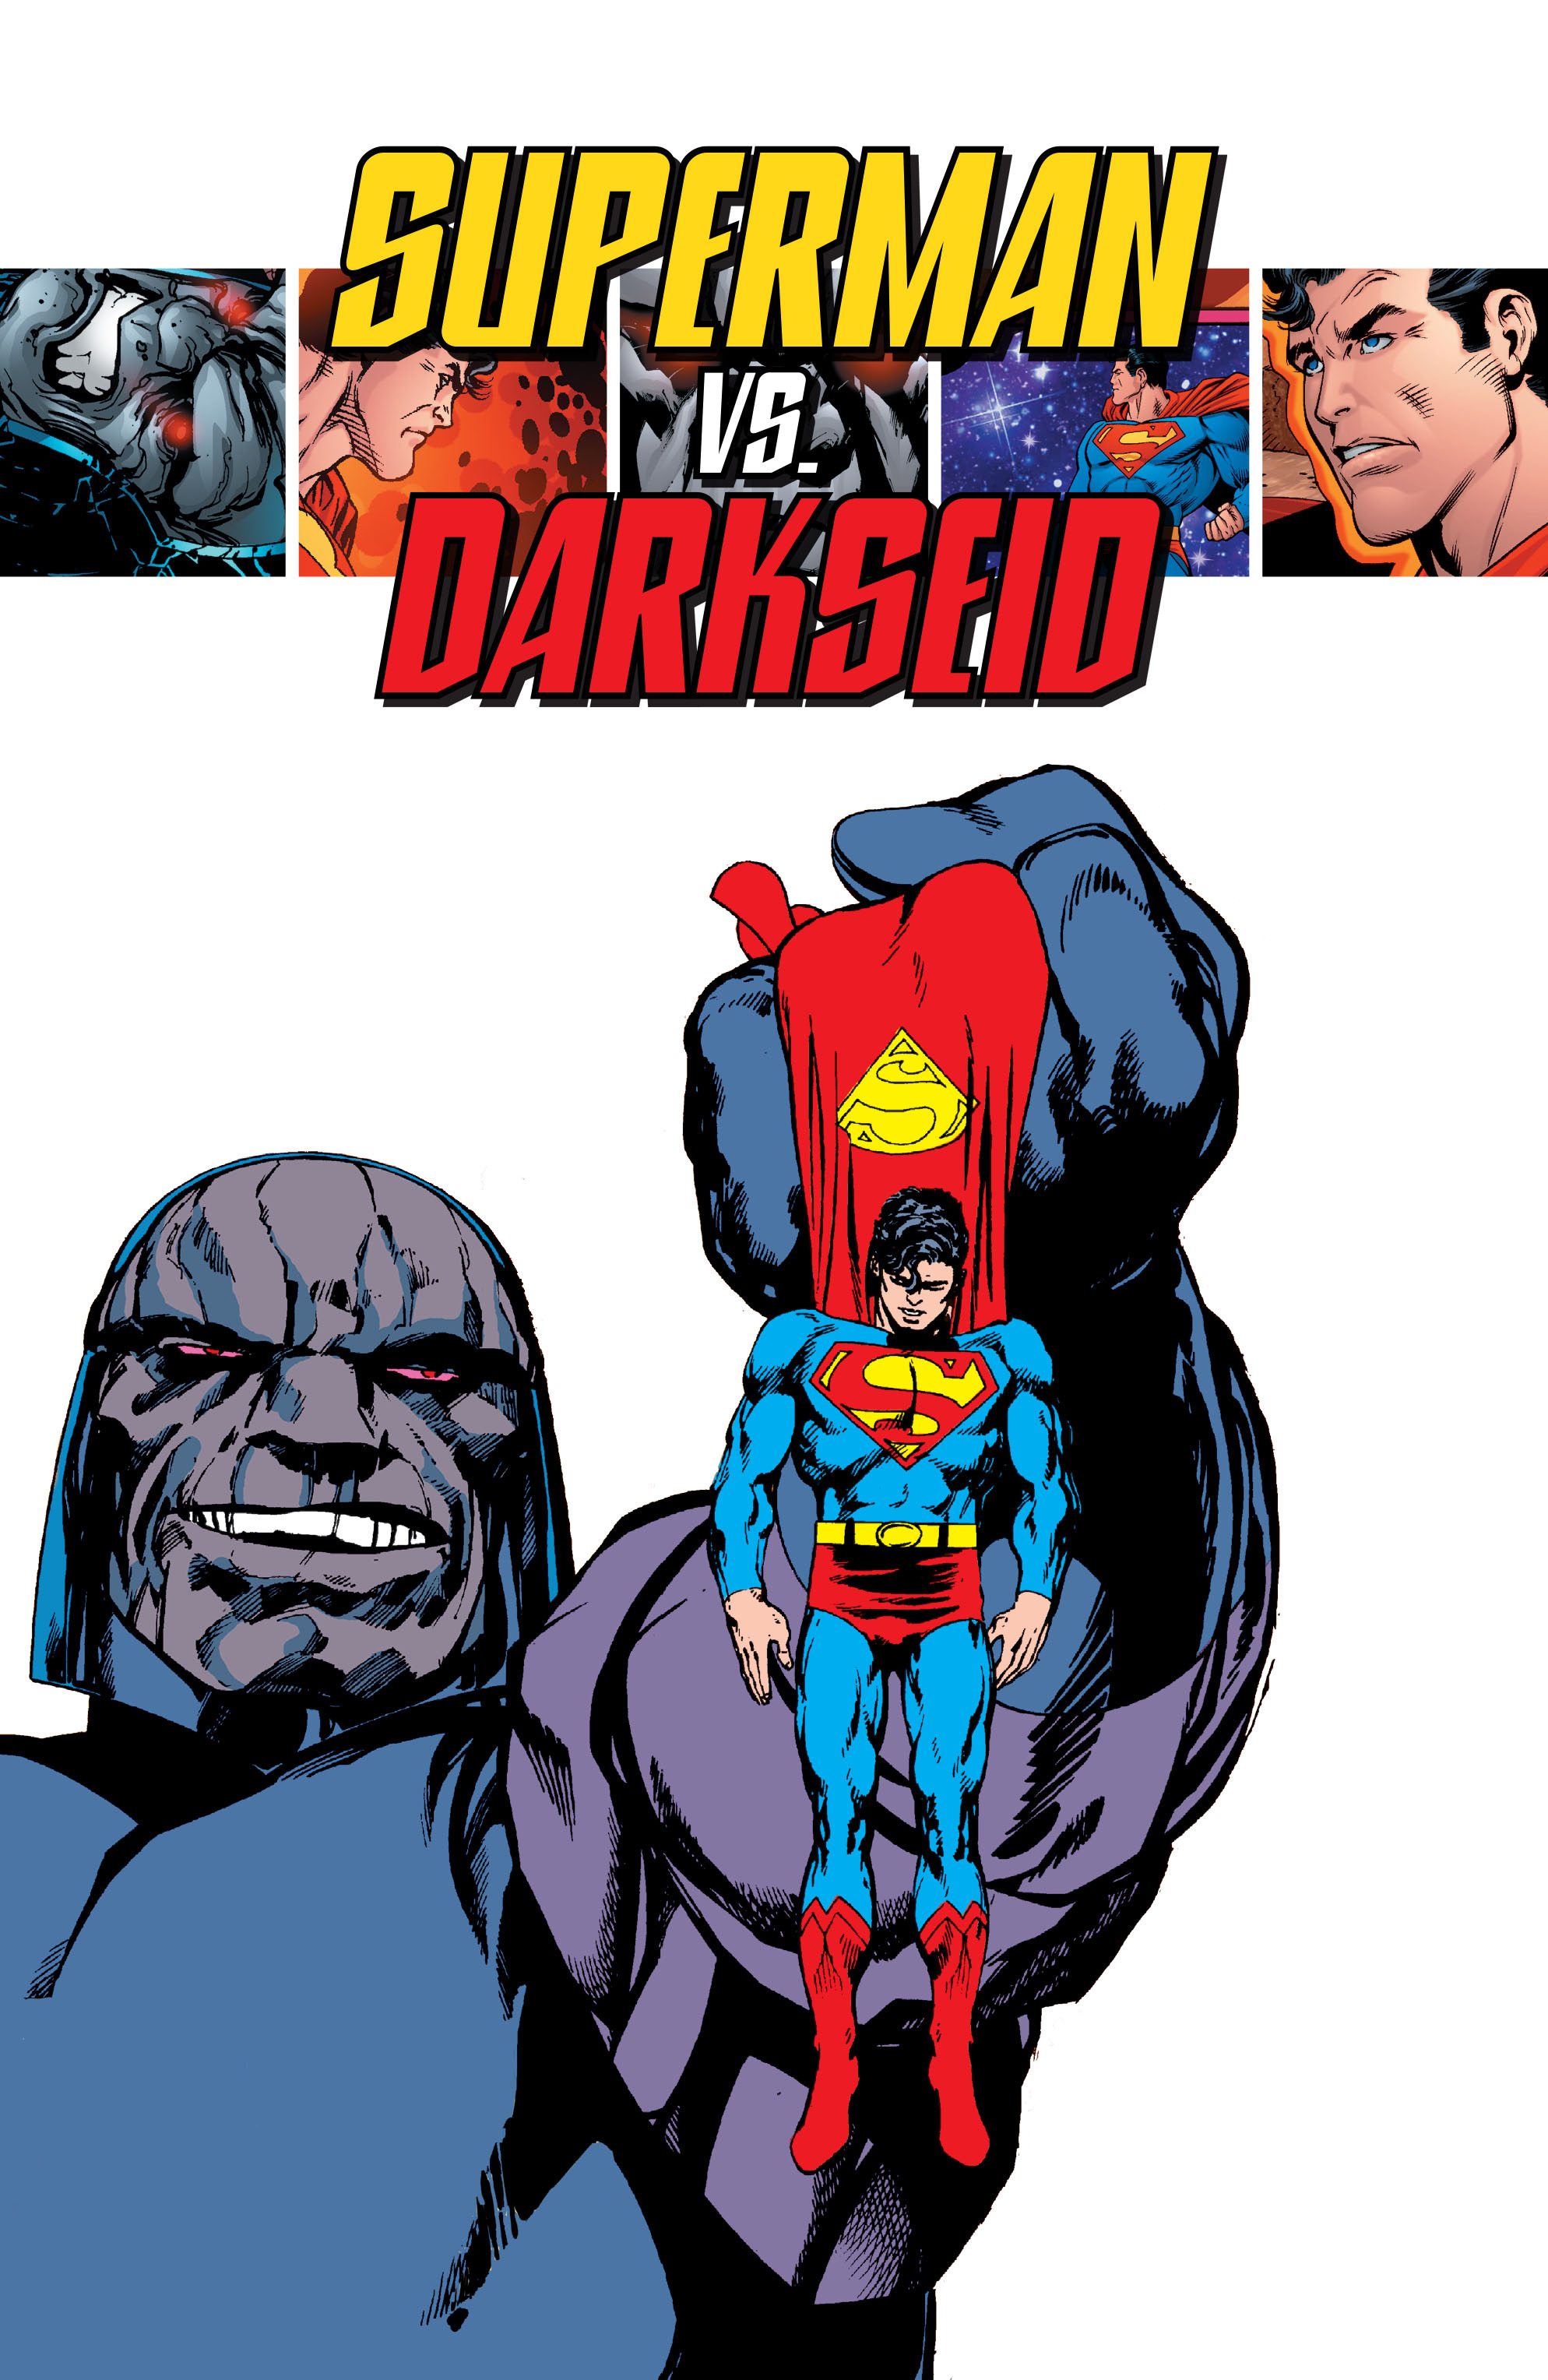 Read online Superman vs. Darkseid comic -  Issue # TPB - 2